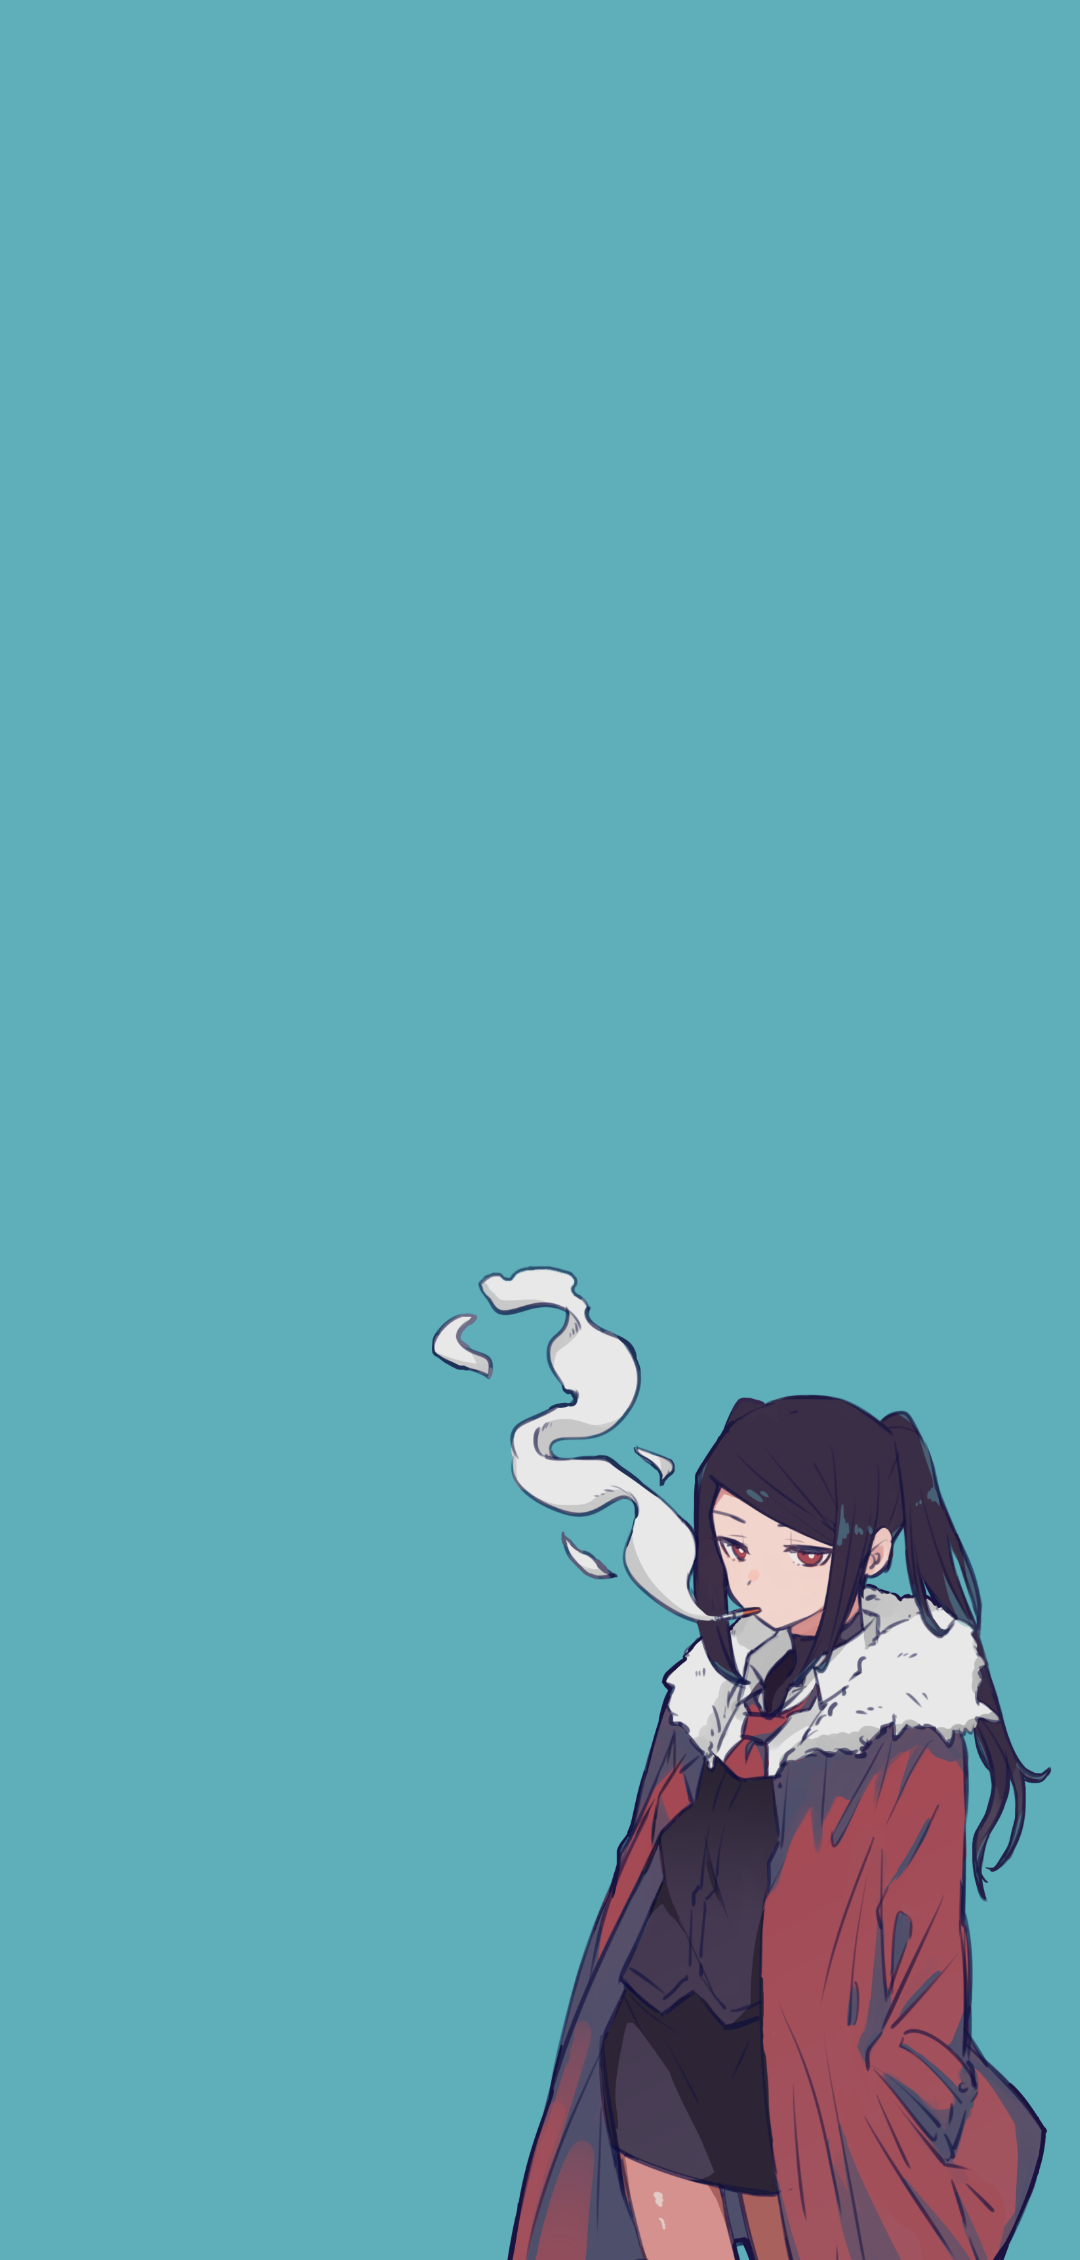 Anime Girl Smoking Wallpapers